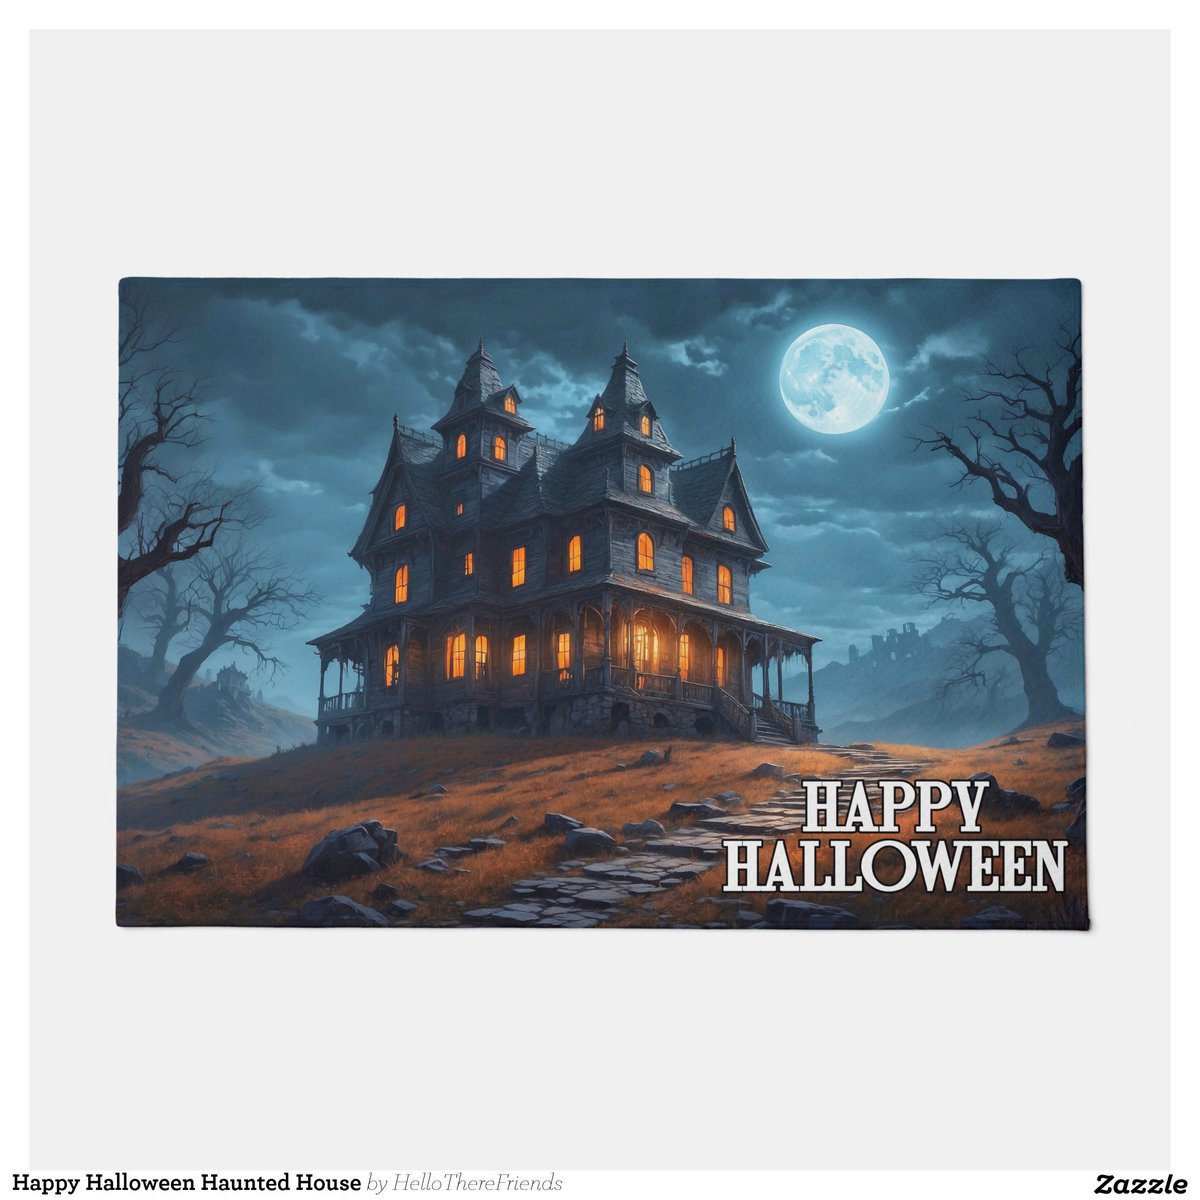 Happy Halloween Haunted House Doormat→zazzle.com/z/68164m4t?rf=…

#WelcomeMat #WelcomeDoormat #HappyHalloween #Halloween2024 #TrickOrTreat #HauntedHouse #HomeDecor #HolidayDecor #Zazzlemade